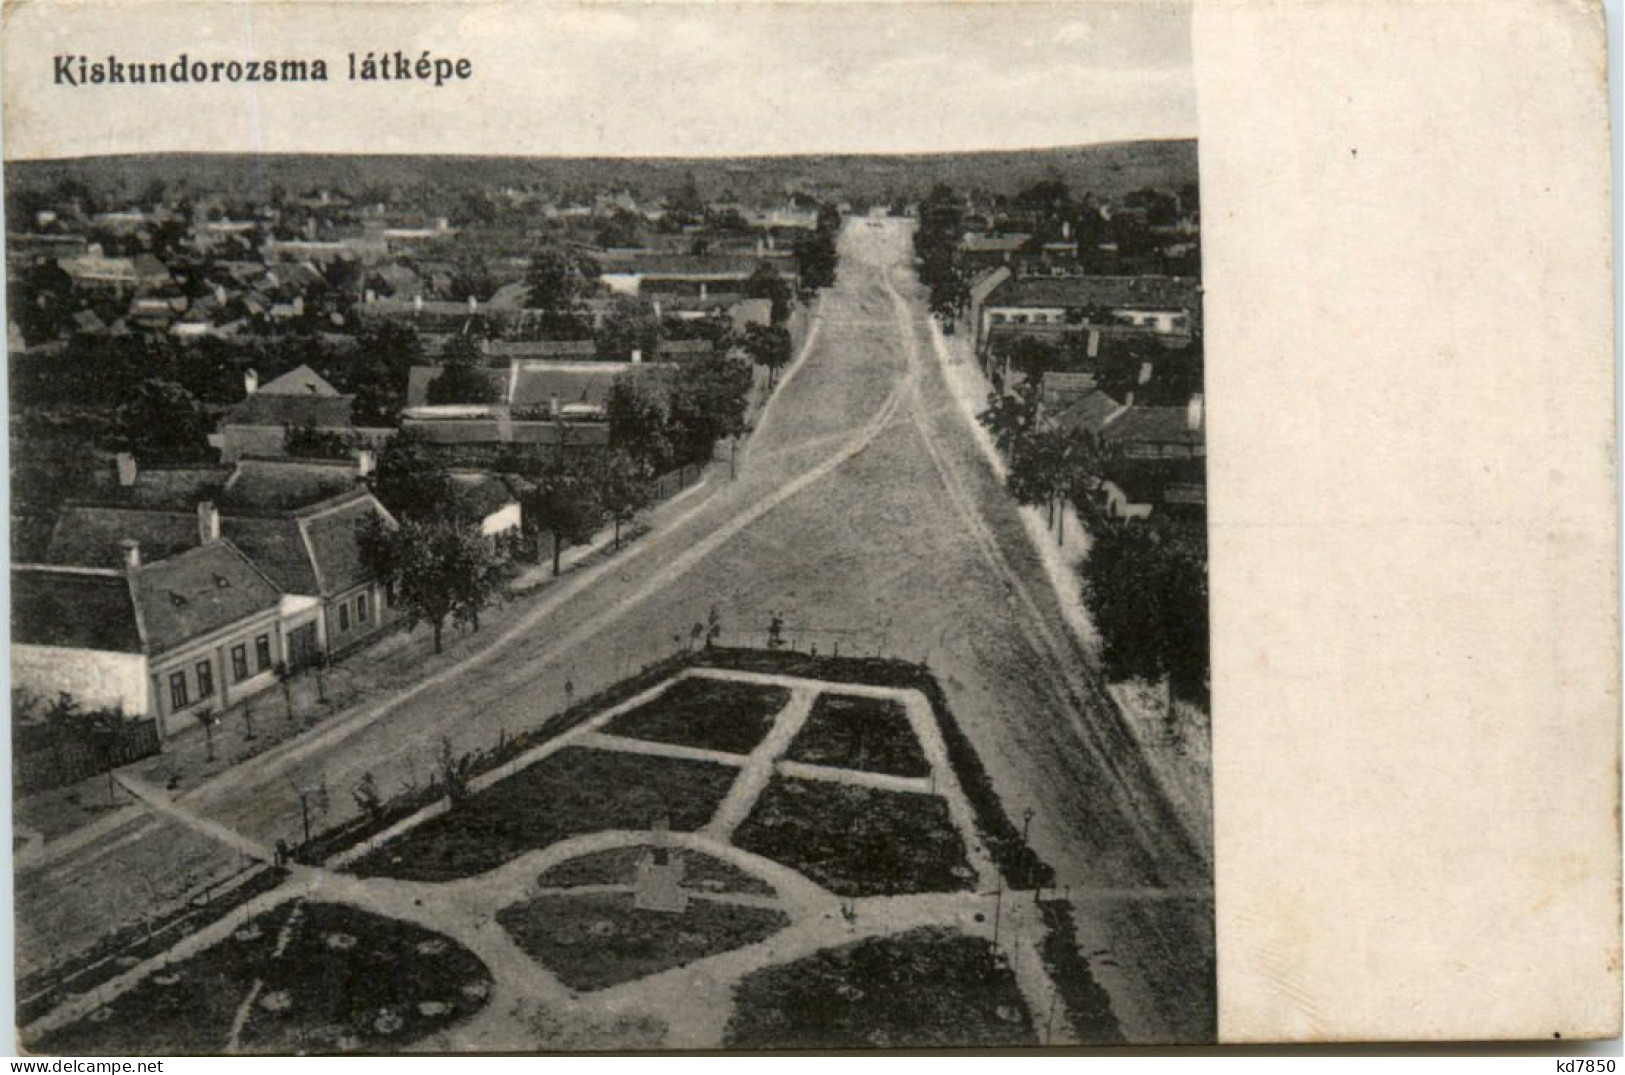 Kiskundorozama Latkepe - Szeged - Ungarn